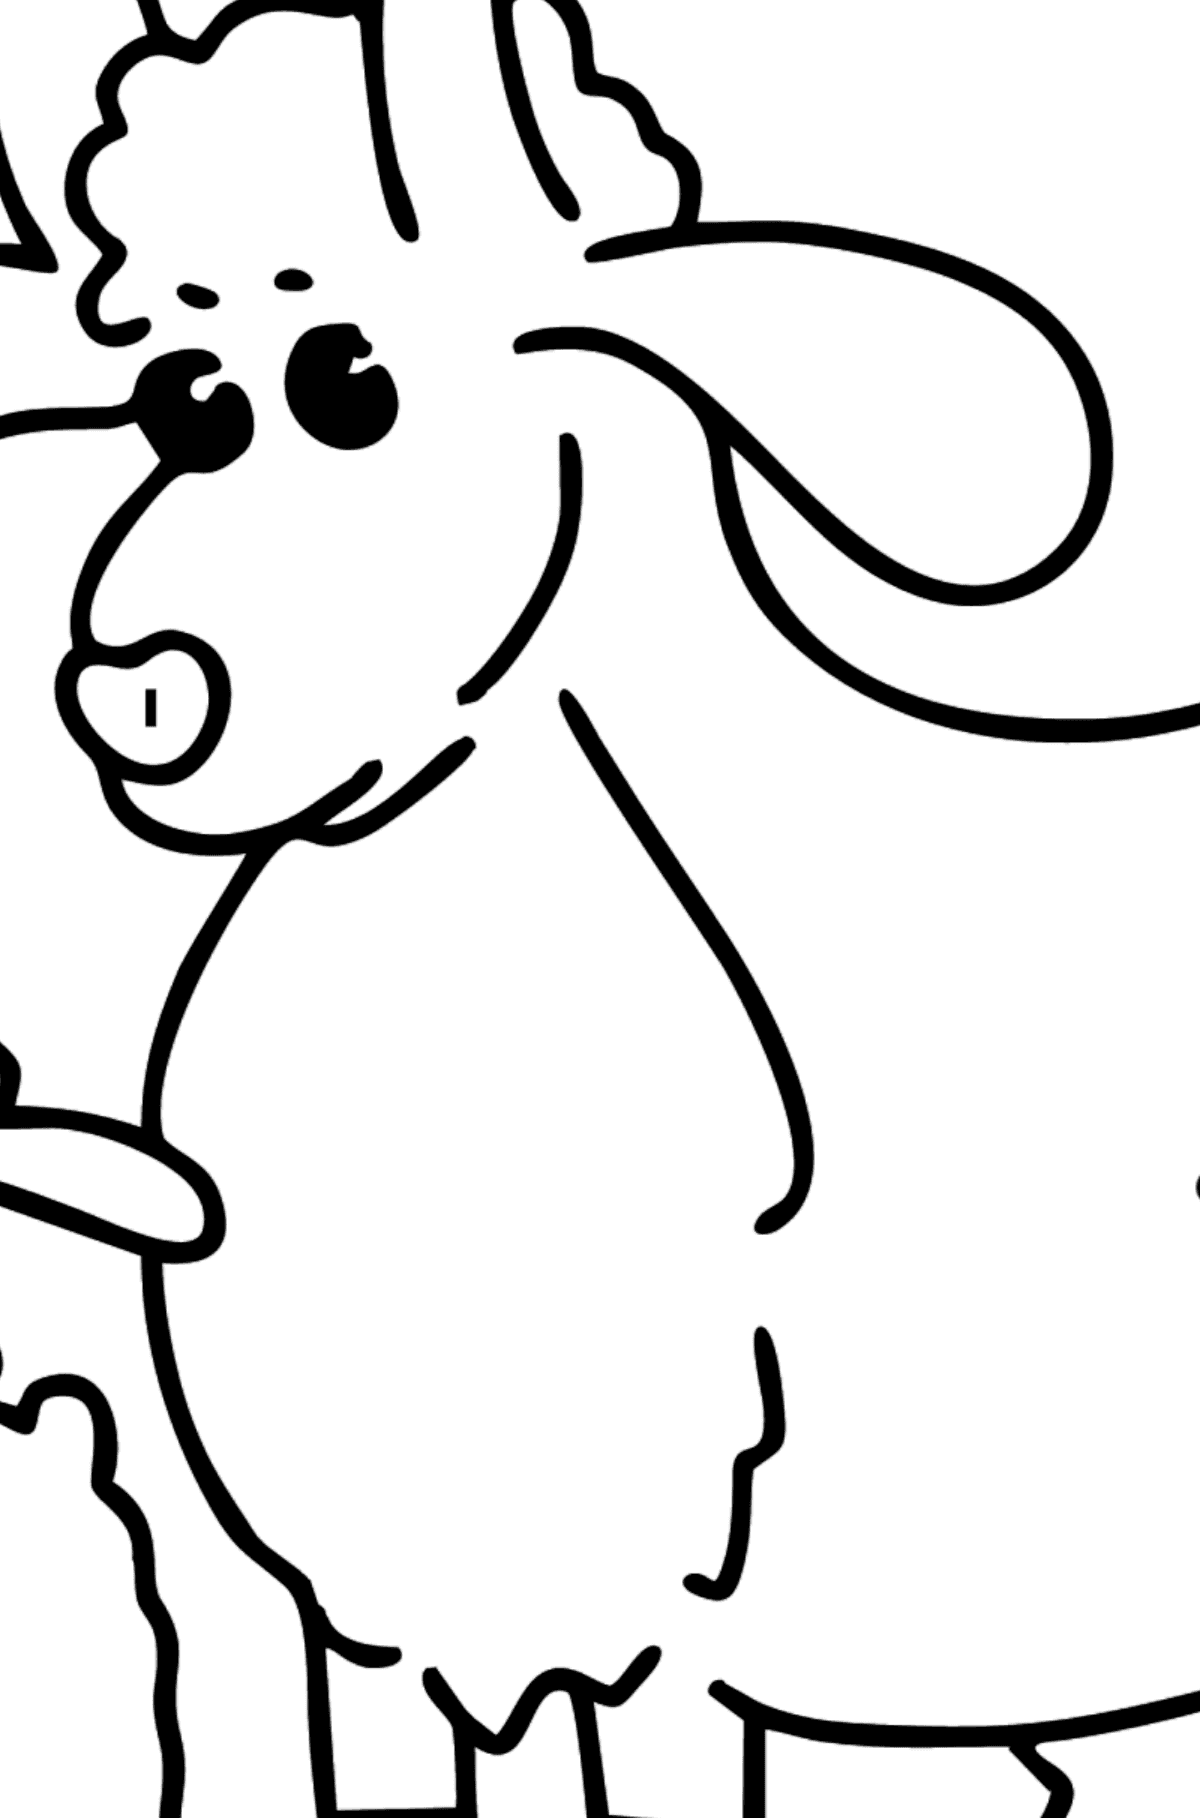 Coloriage - Chèvre et chevreau - Coloriage par Symboles pour les Enfants